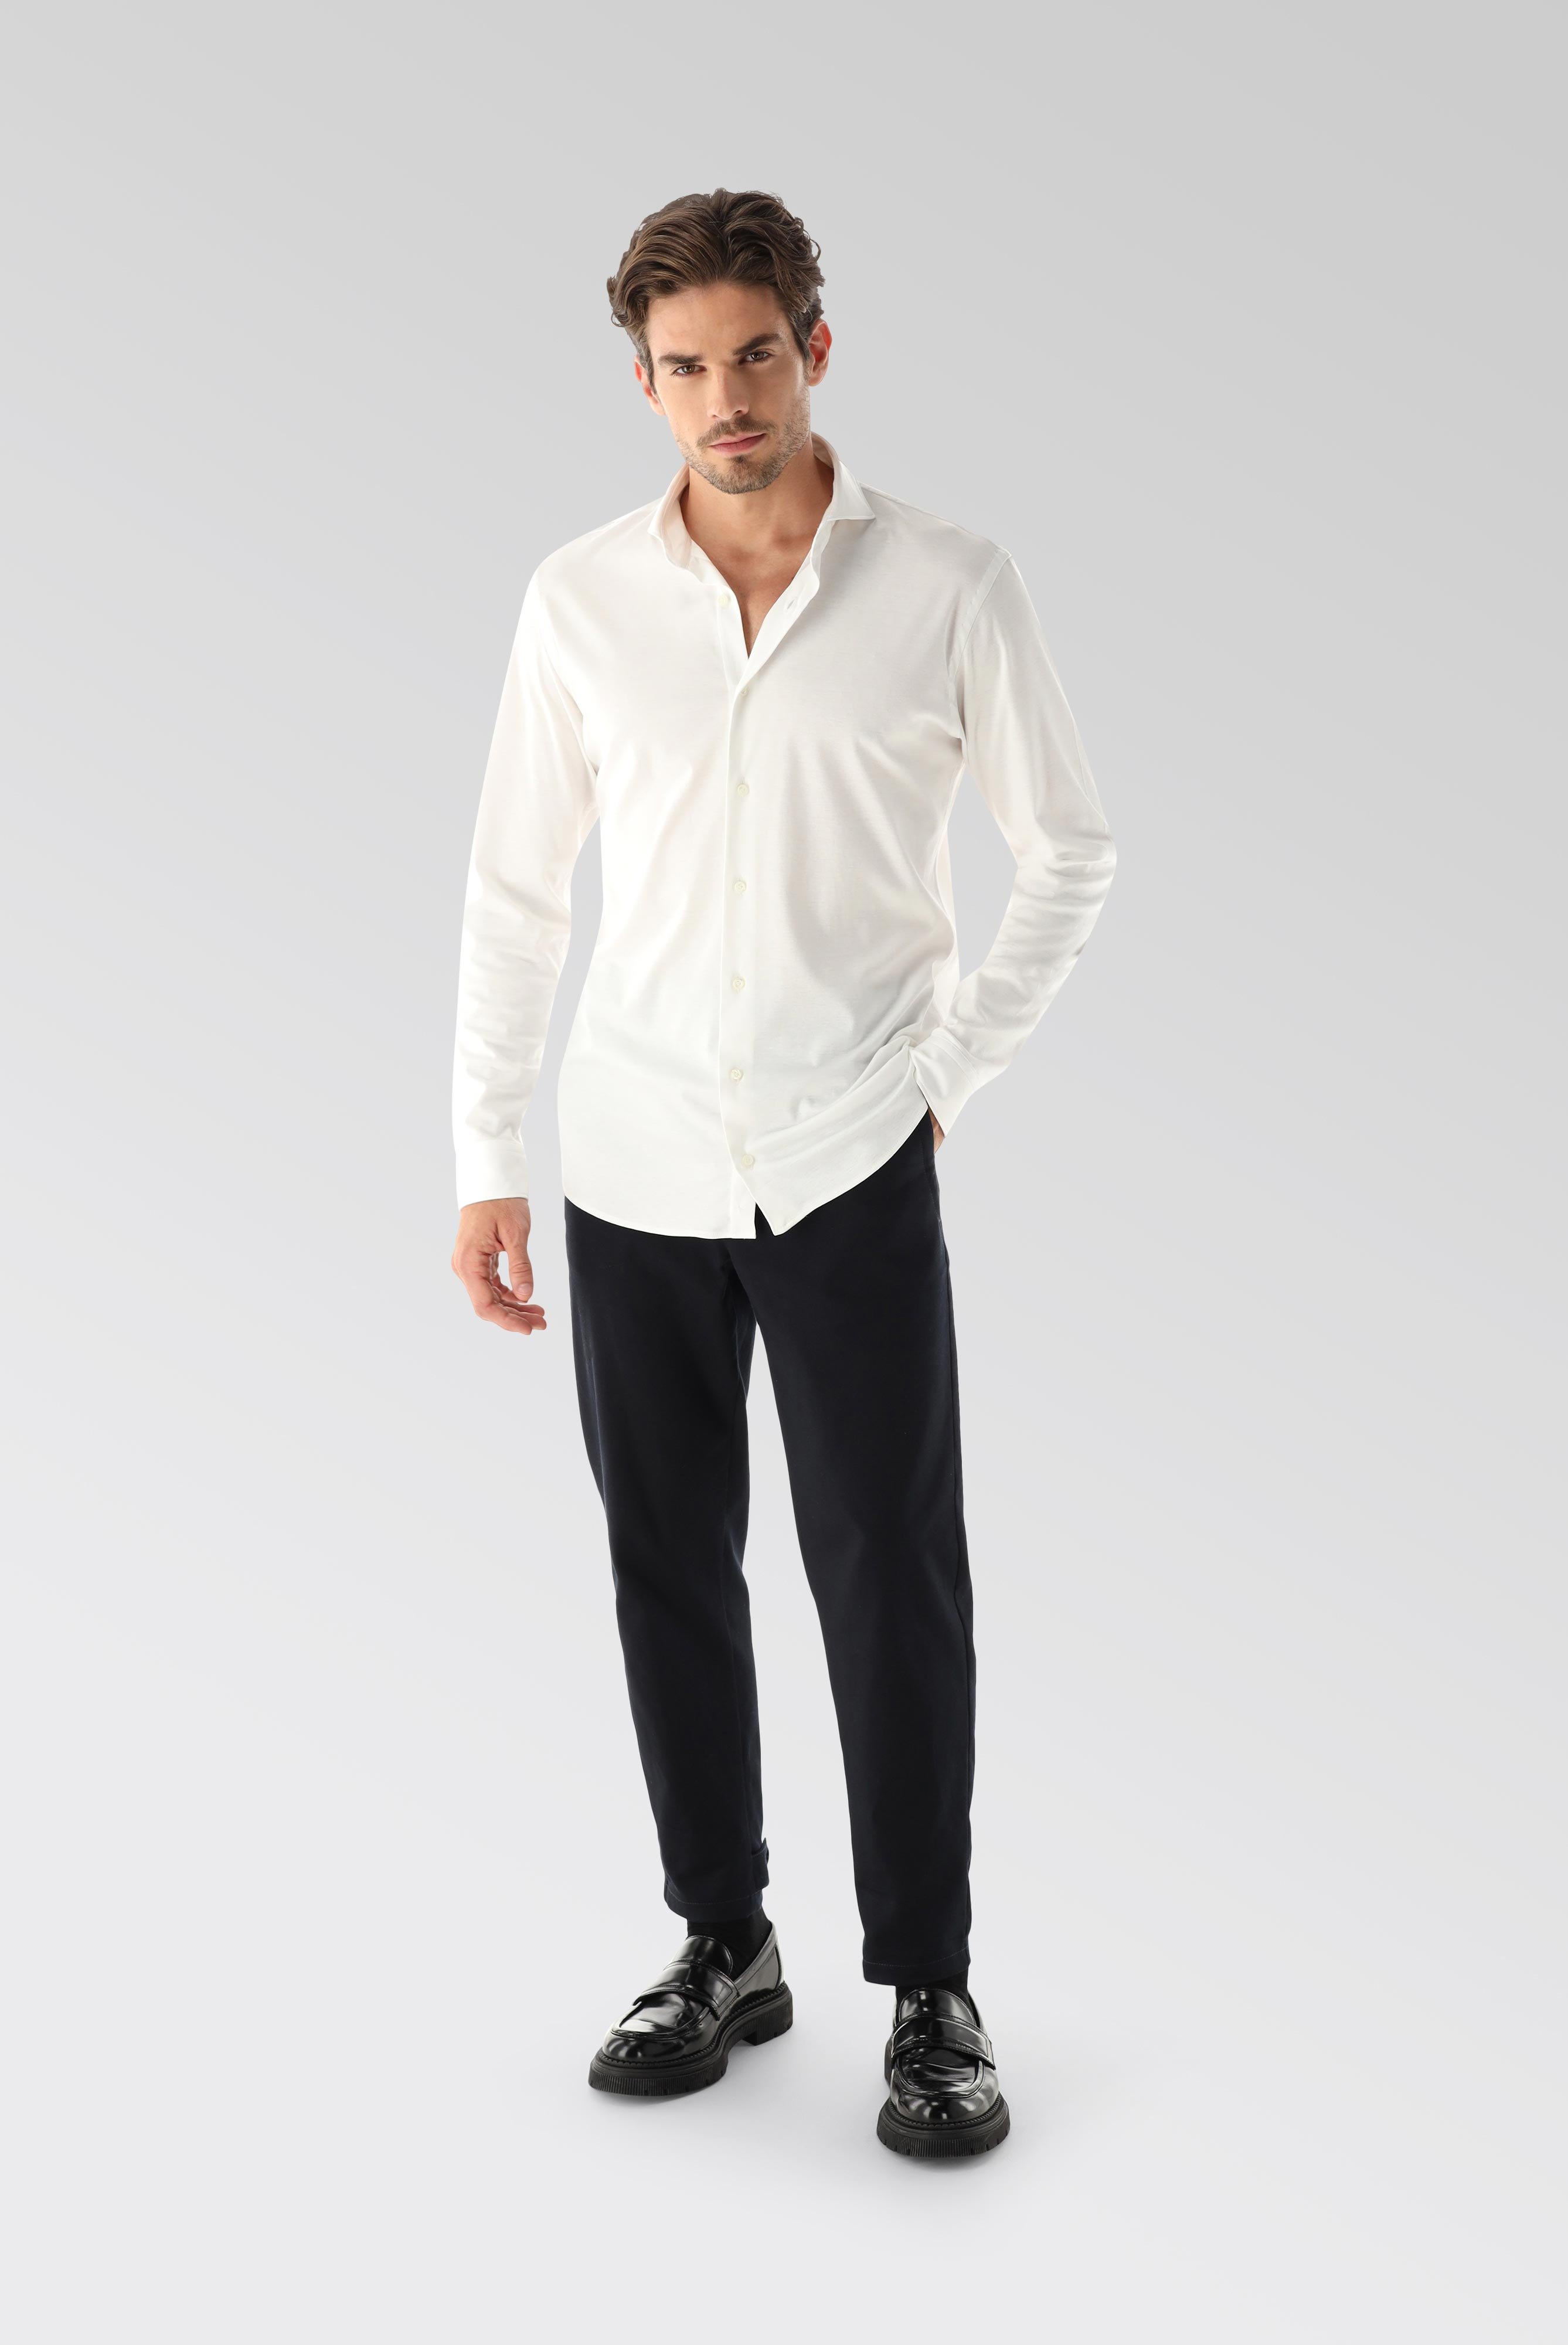 Jersey Shirts+Jersey Shirt Swiss Cotton Slim Fit+20.1682.UC.180031.000.L